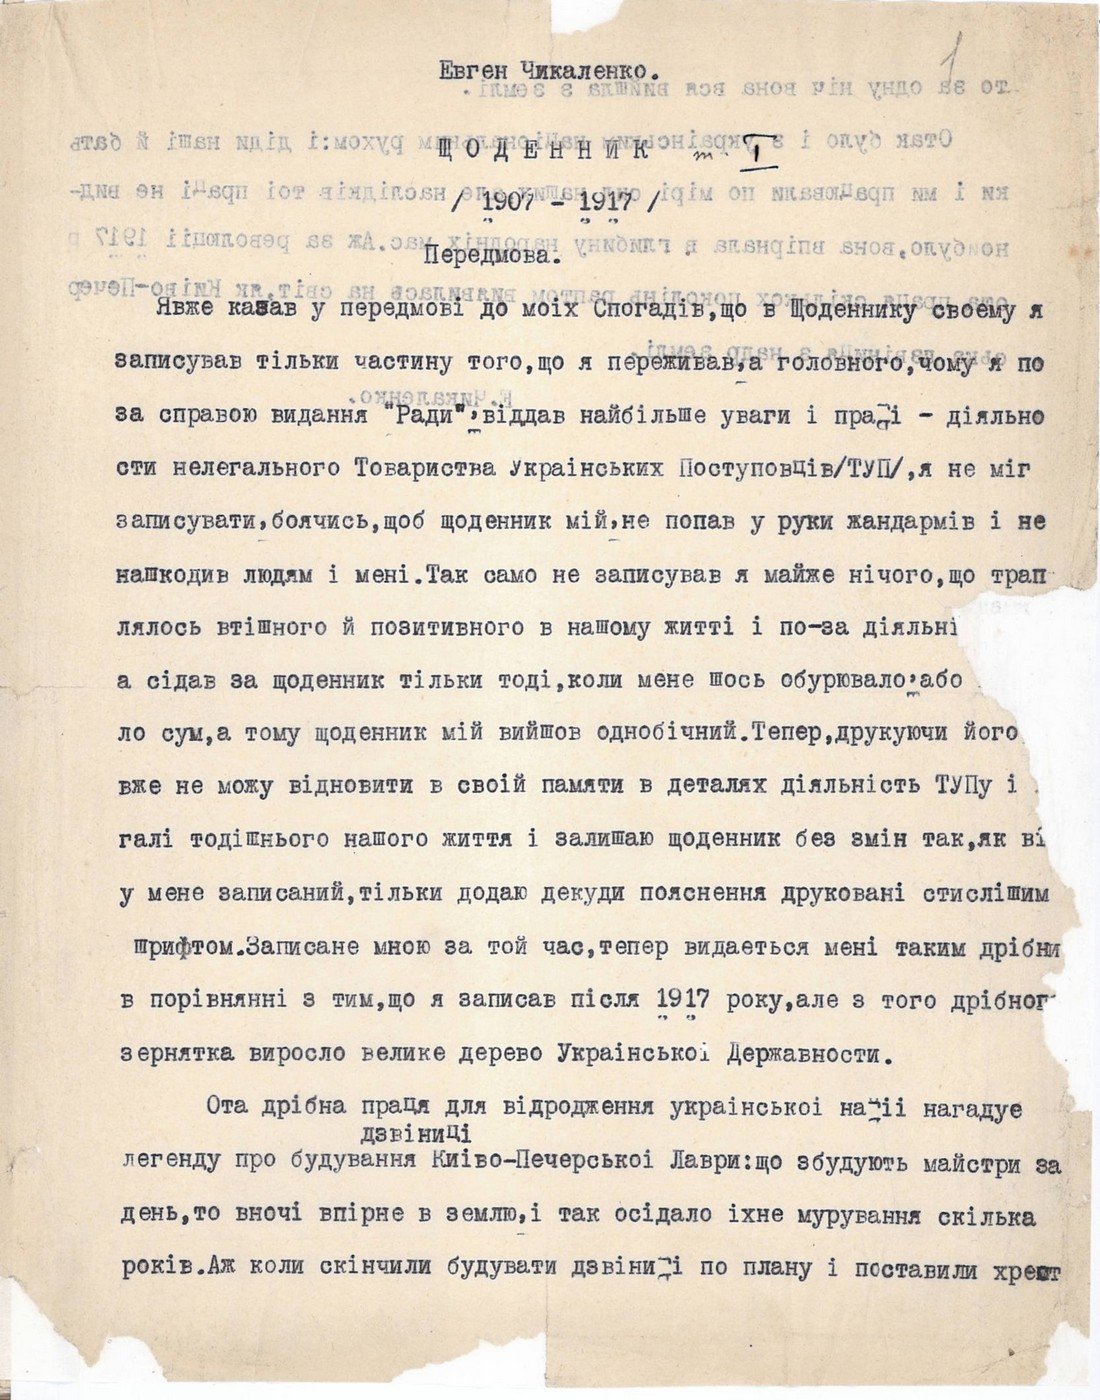 Передмова до «Щоденника (1907-1917)» Є. Чикаленка.